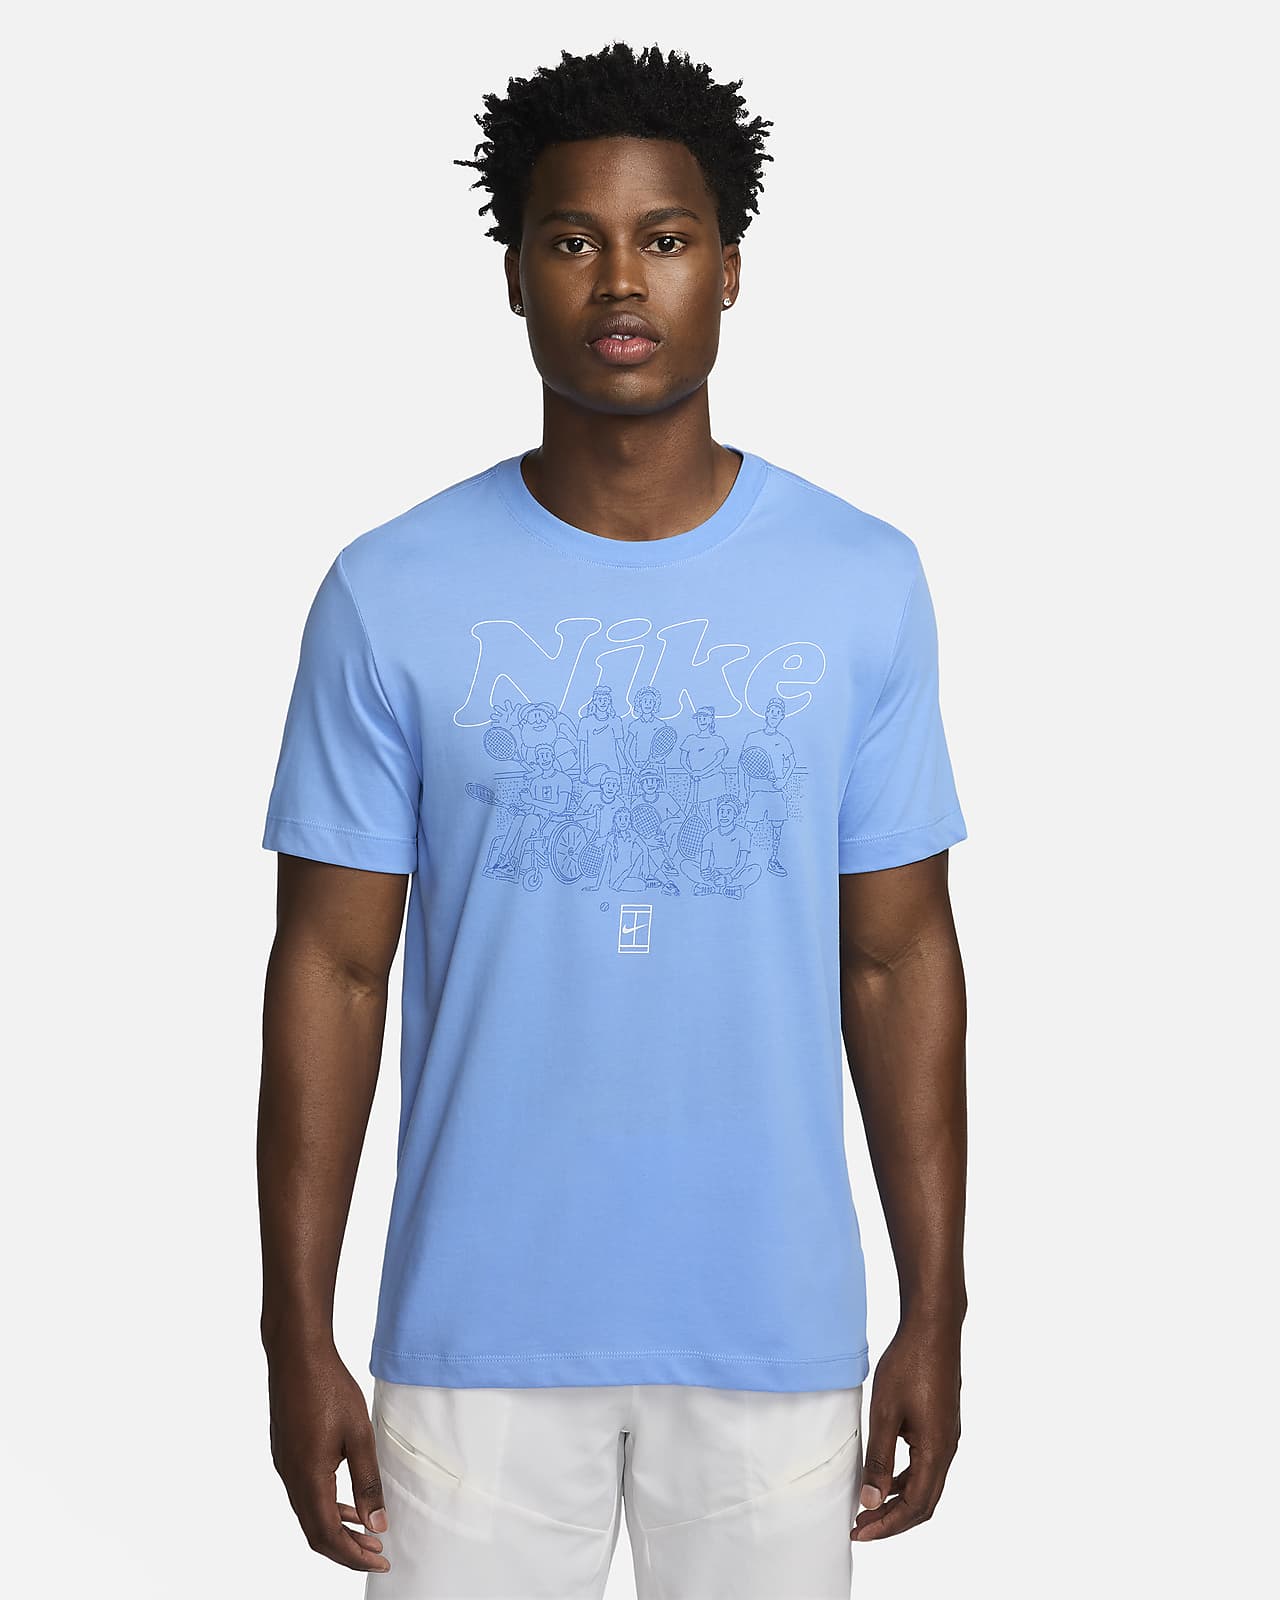 Tennis-t-shirt NikeCourt Dri-FIT för män